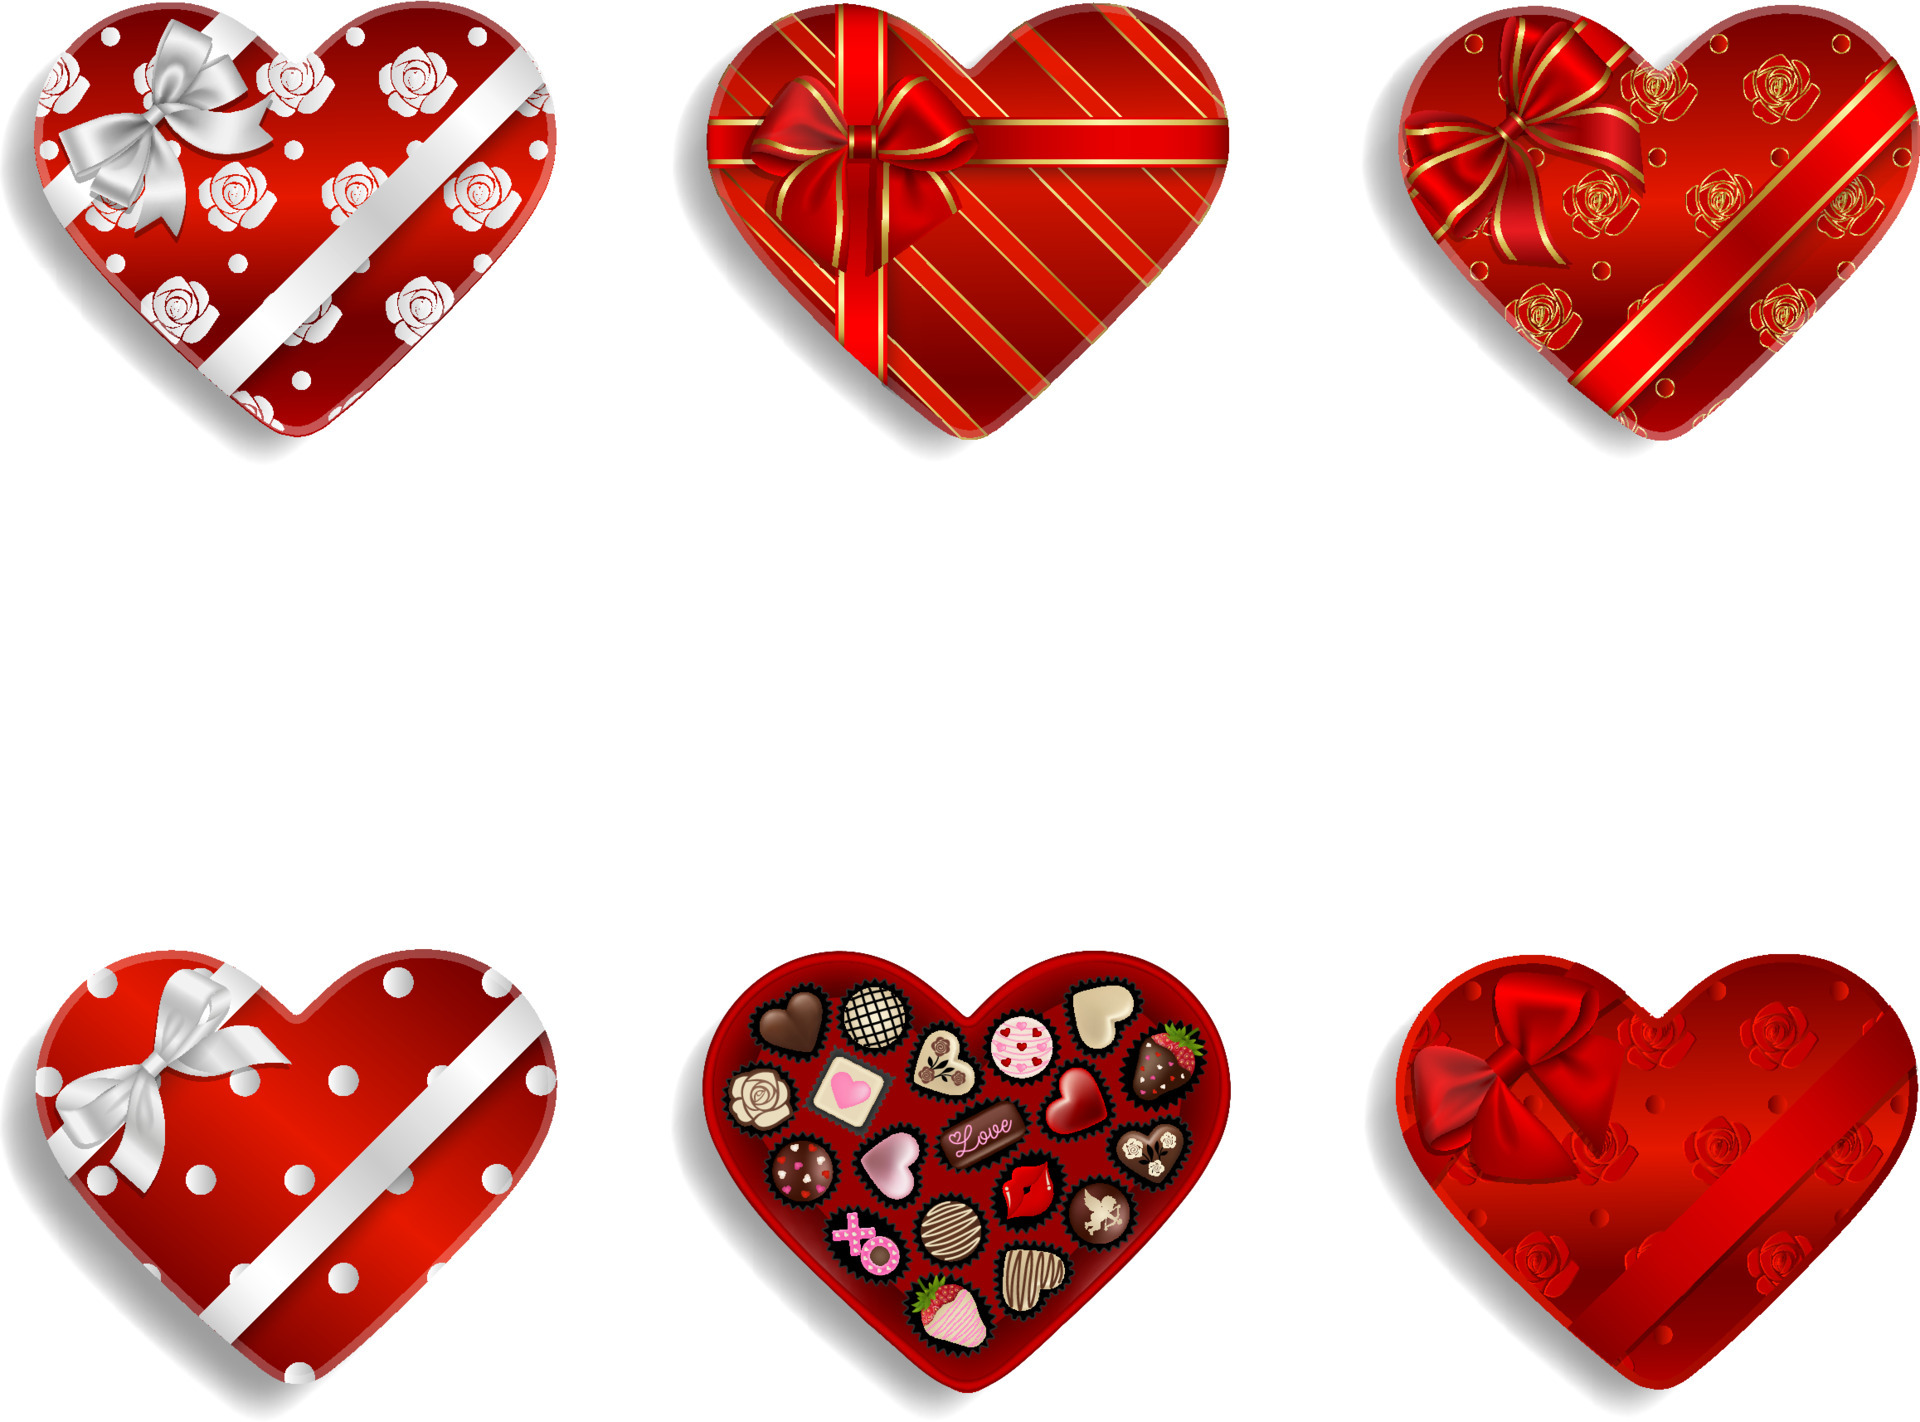 https://static.vecteezy.com/ti/vettori-gratis/p3/4566870-set-di-scatole-di-cioccolato-a-cuore-rosso-confezioni-regalo-di-san-valentino-con-cioccolatini-vettoriale.jpg